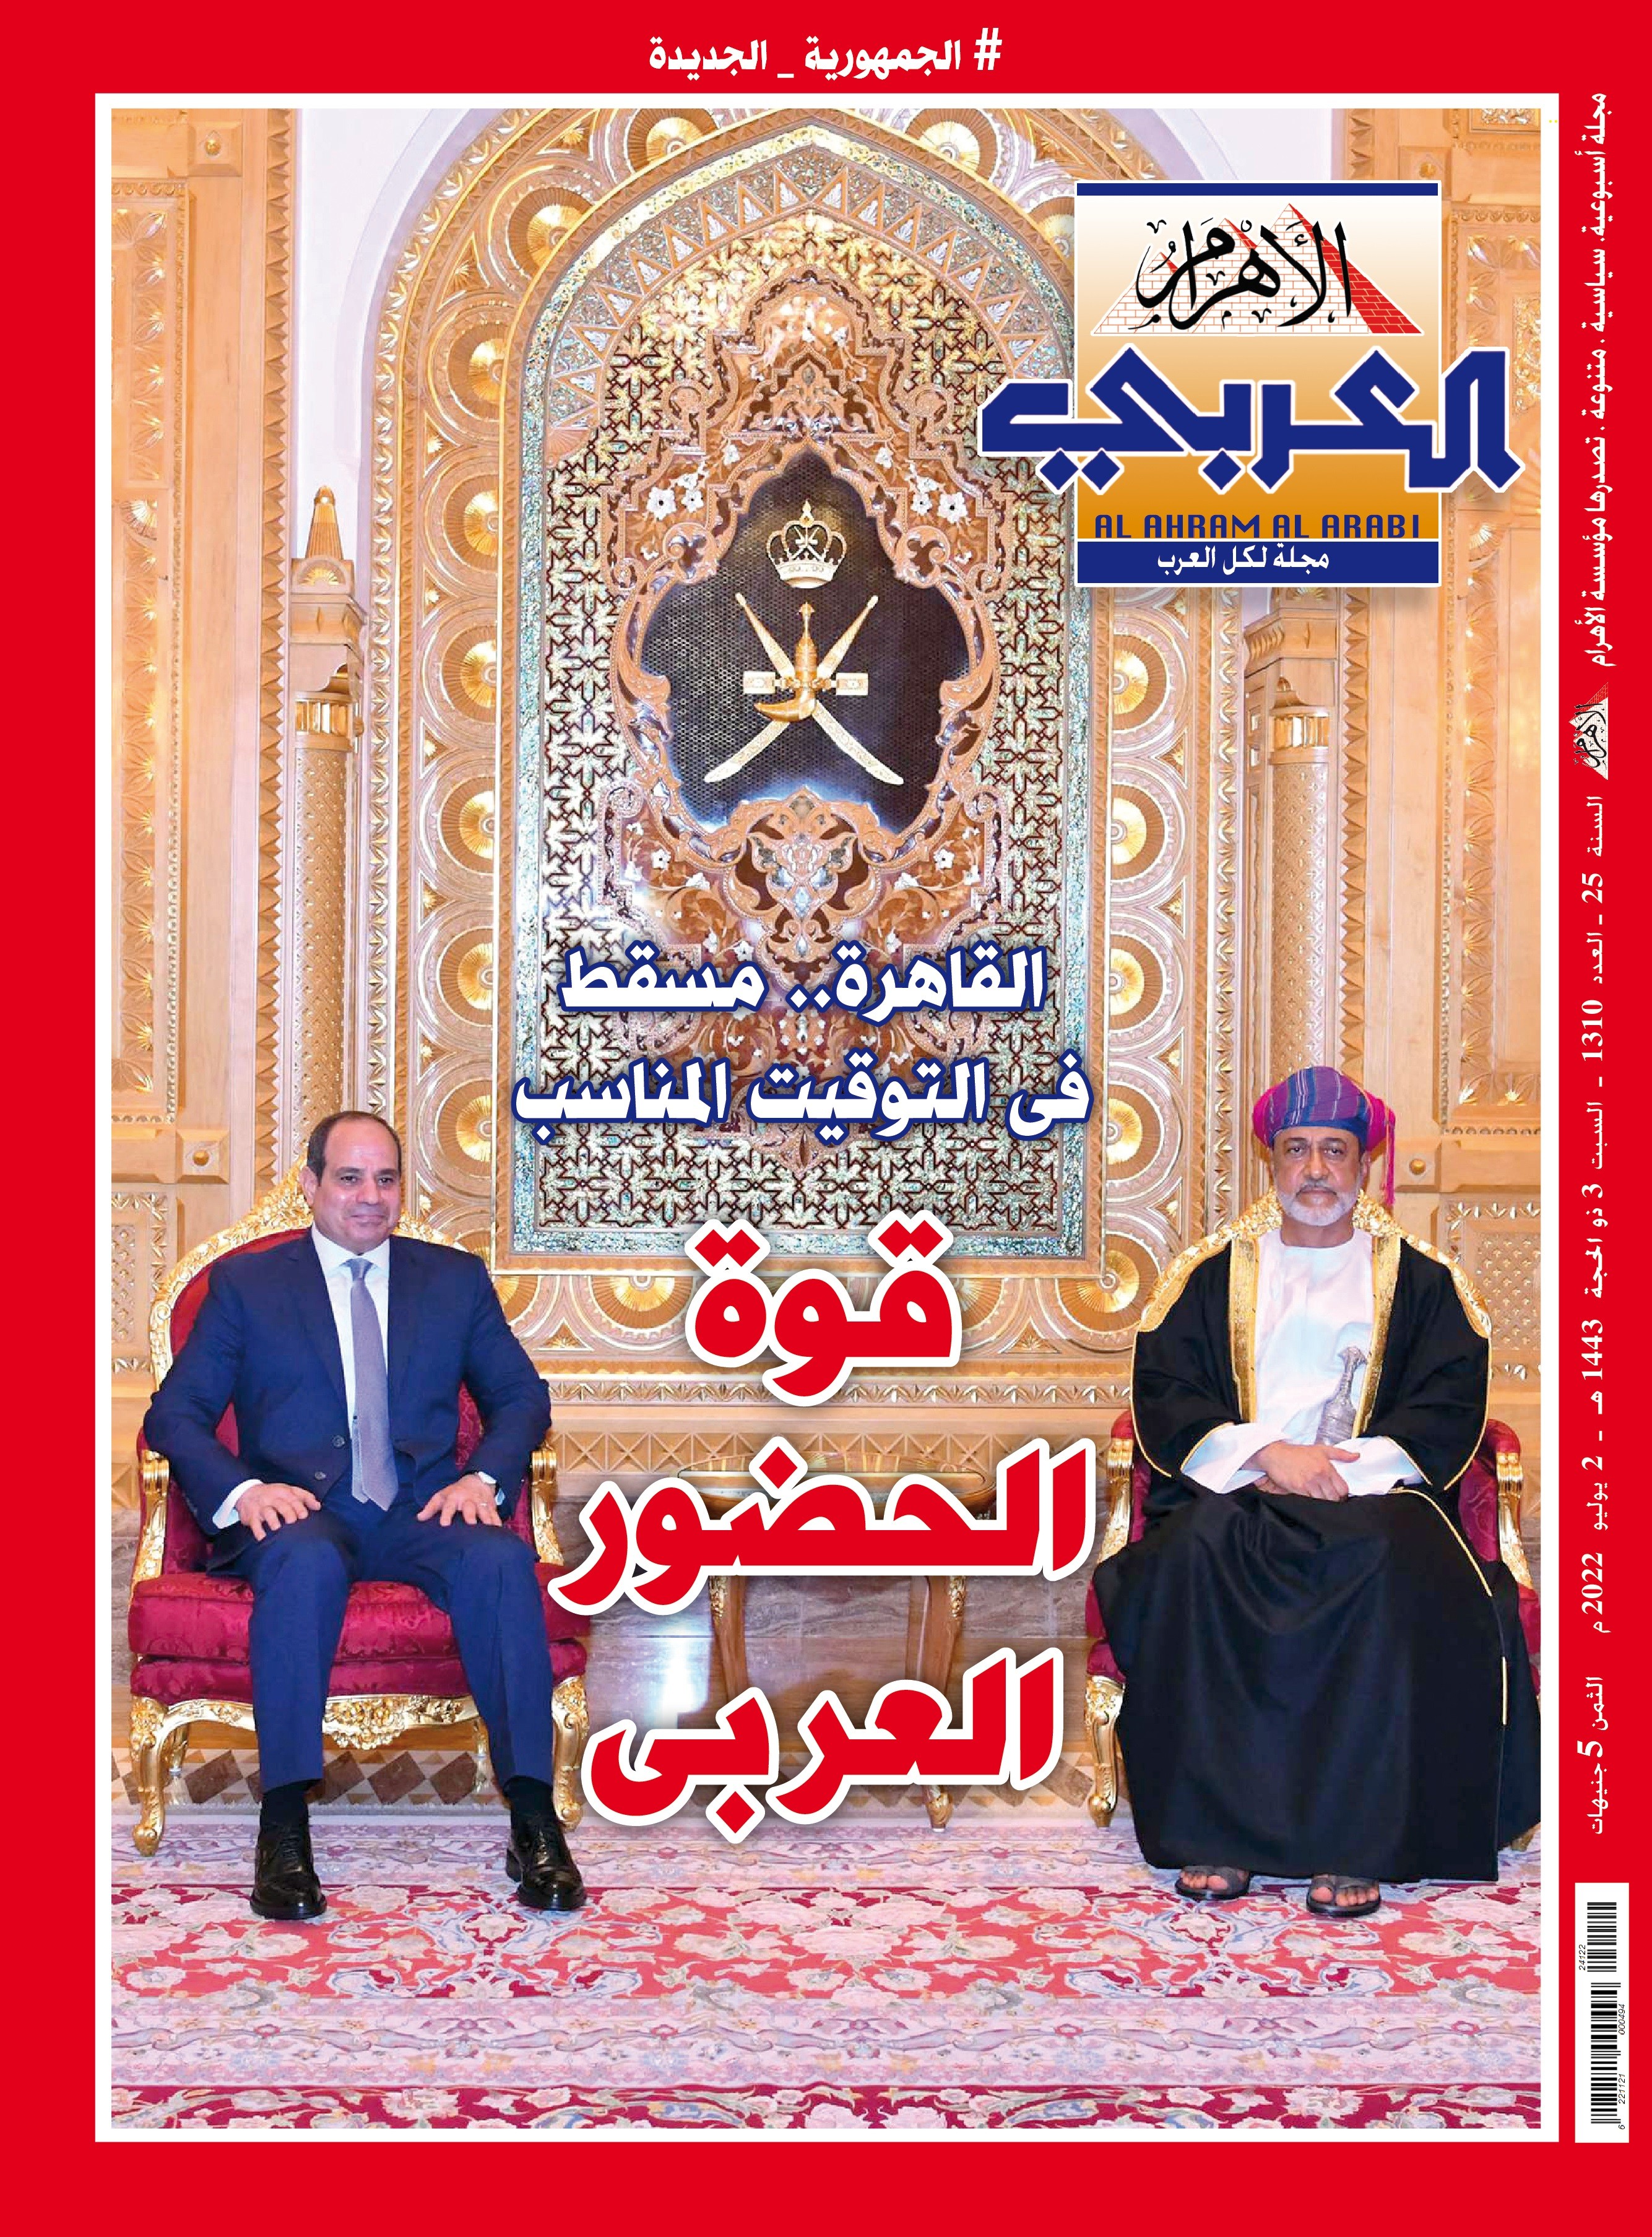 غلاف الأهرام العربي.jpg